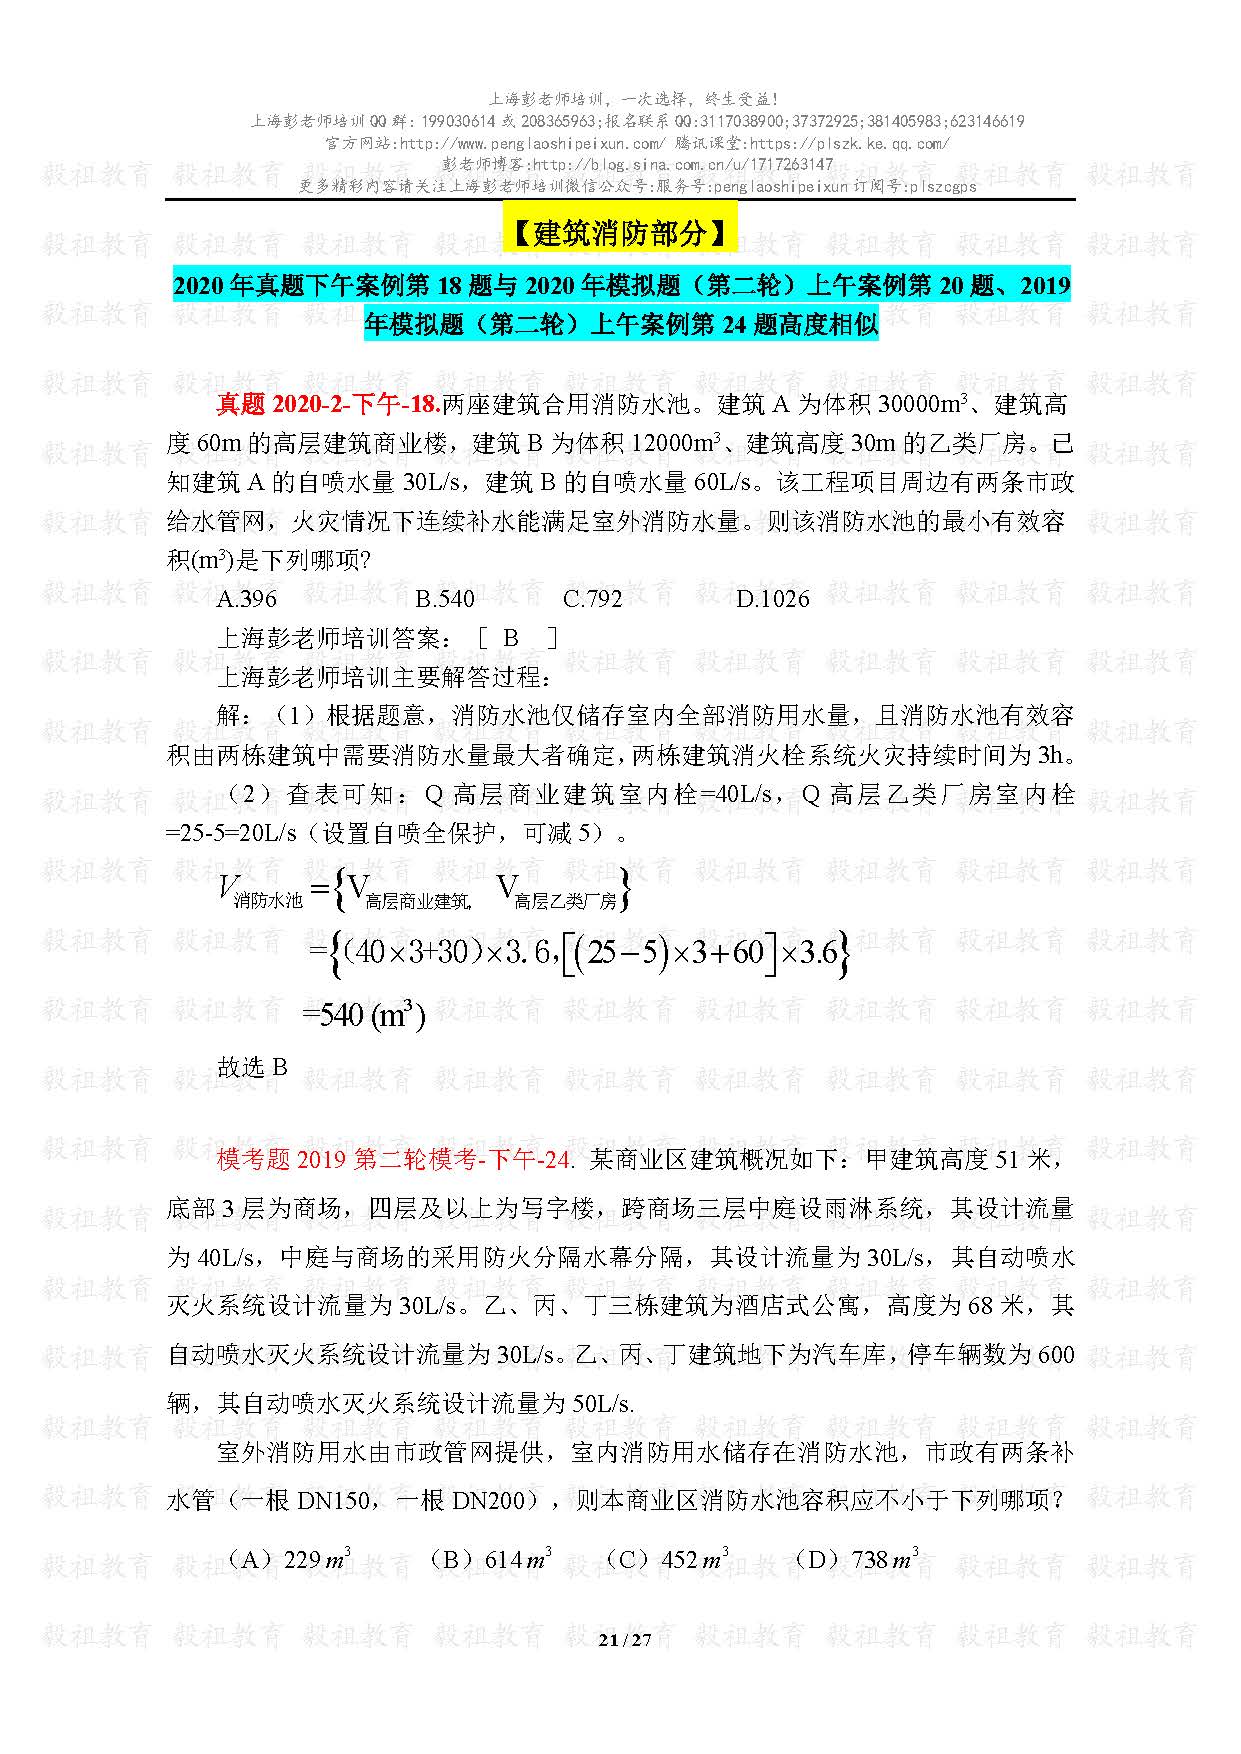 2020注册给排水考试真题与模考题相似度分析-上海彭老师培训_页面_21.jpg.jpg